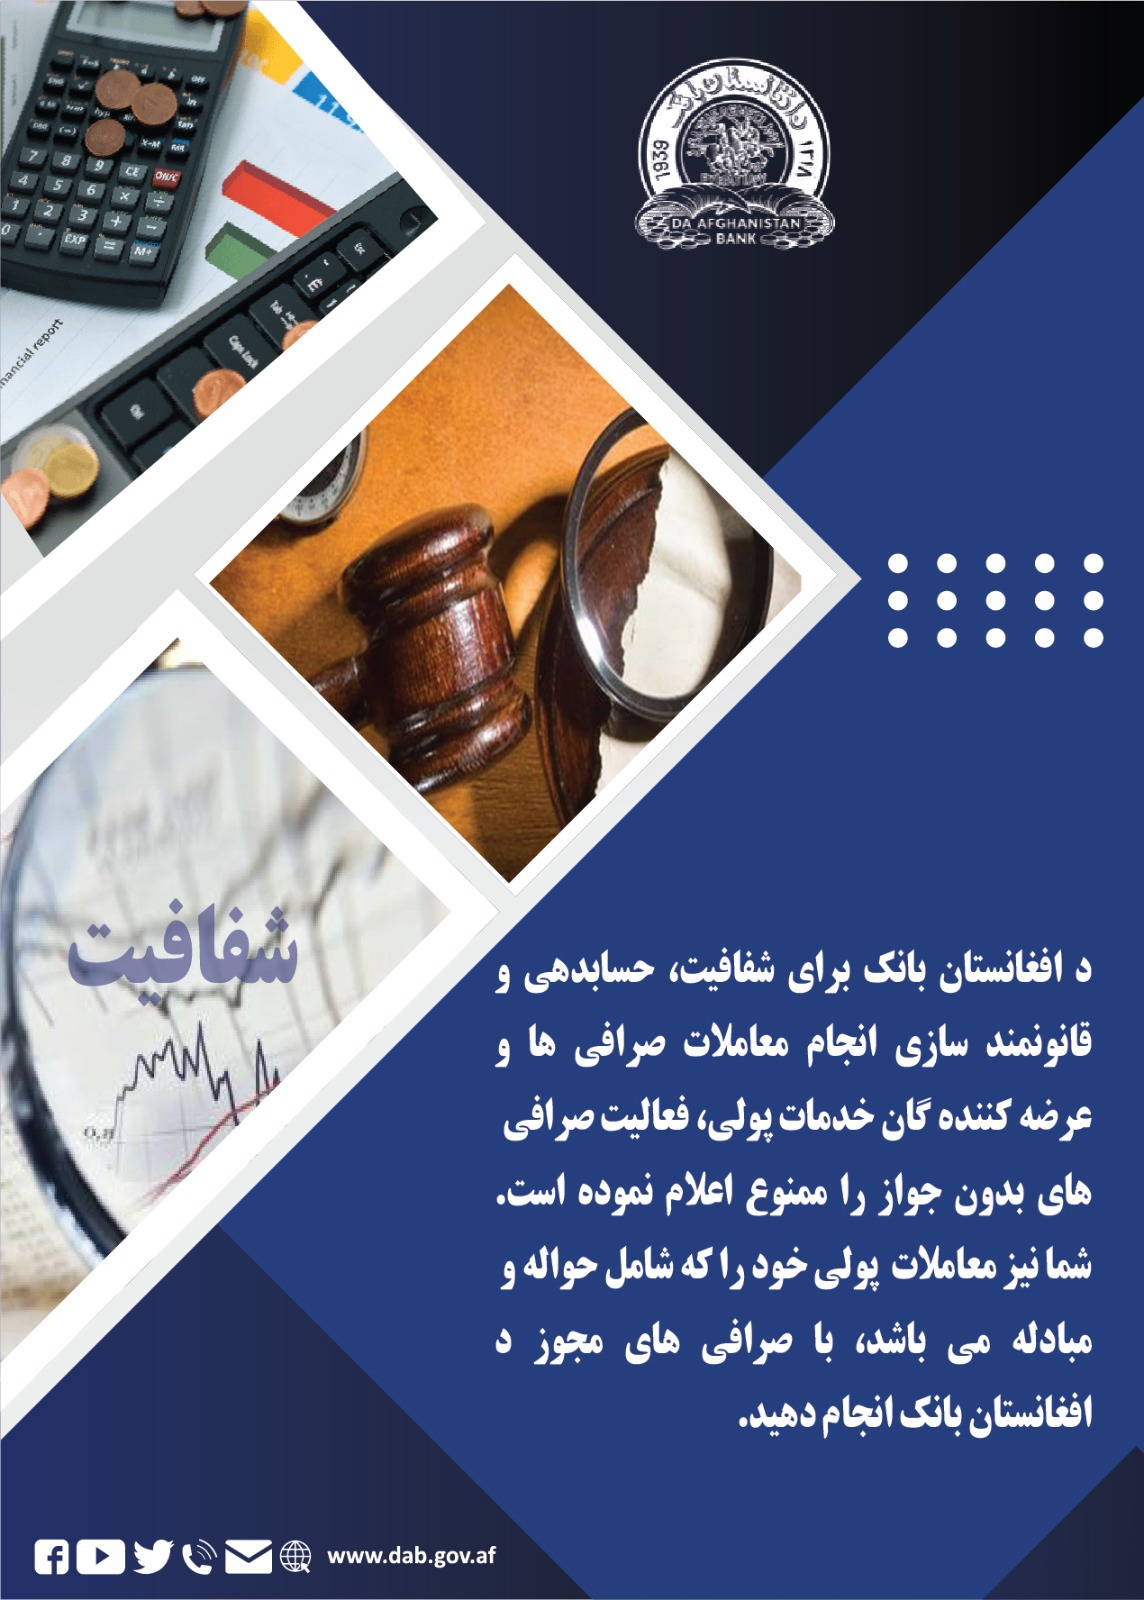 د افغانستان بانک برای شفافیت، حسابدهی و قانونمند شازی انجام معاملات صرافی ها و عرضه کننده گان خدمات پولی 